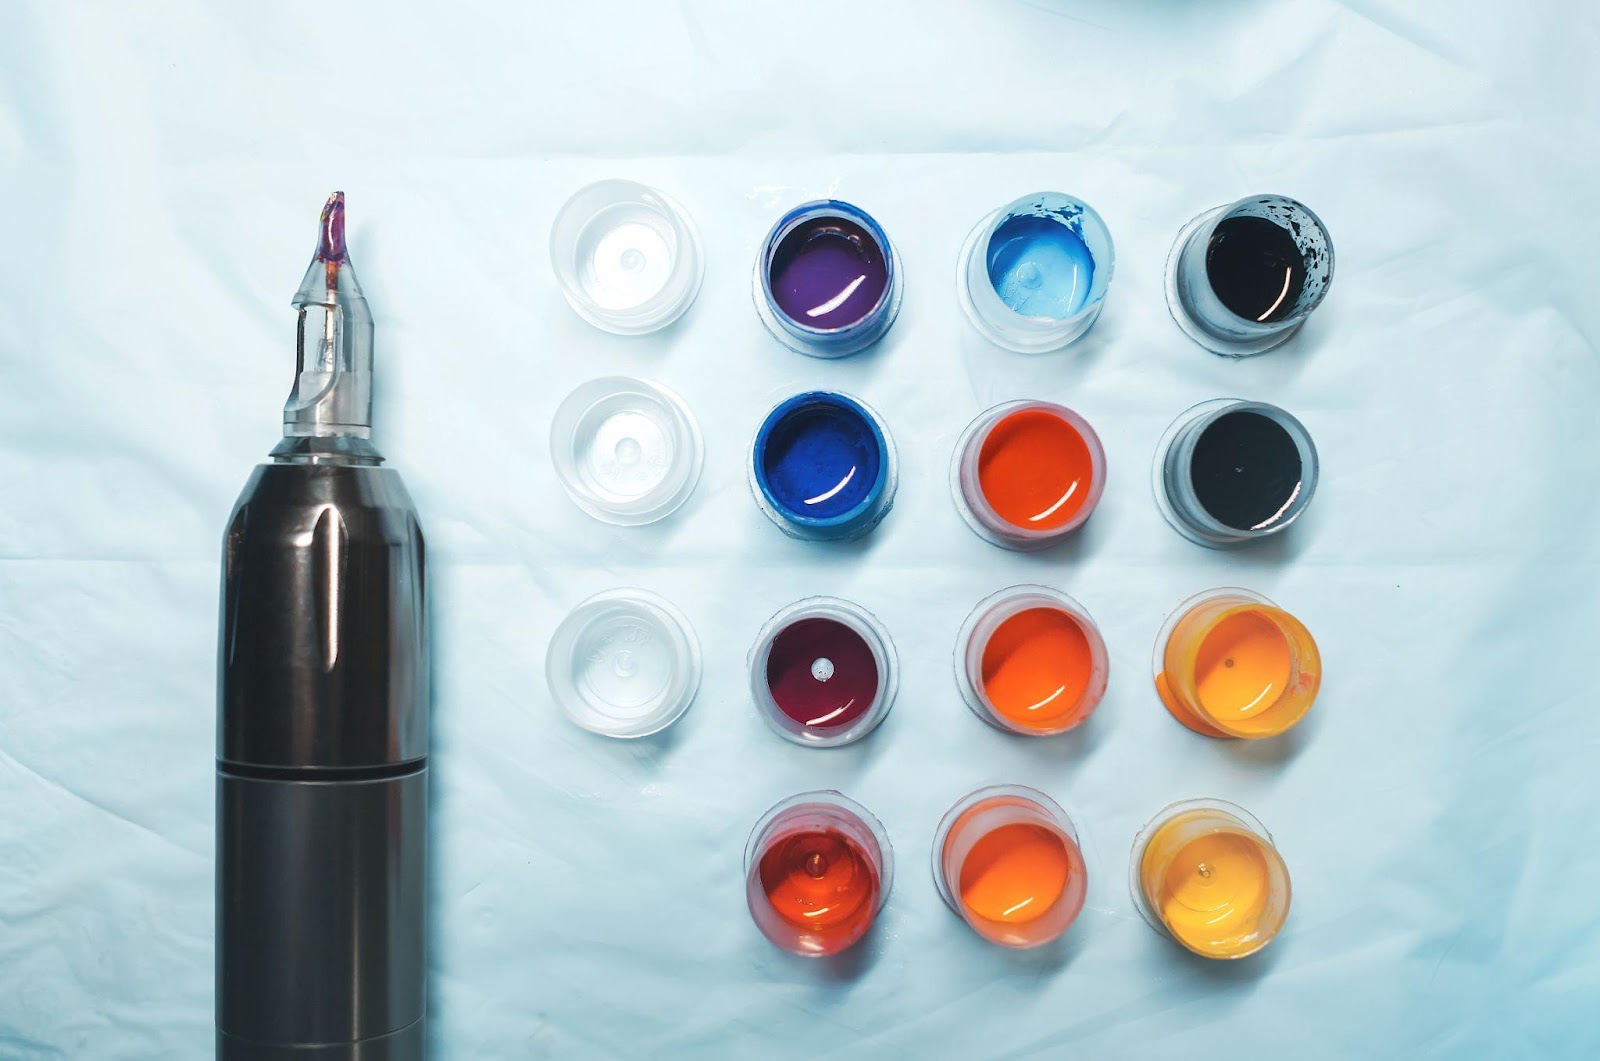 ٹیٹو کی سیاہی میں استعمال ہونے والے روغن اکثر رنگین پینٹ، پلاسٹک اور ٹیکسٹائل کے لیے استعمال ہوتے ہیں۔